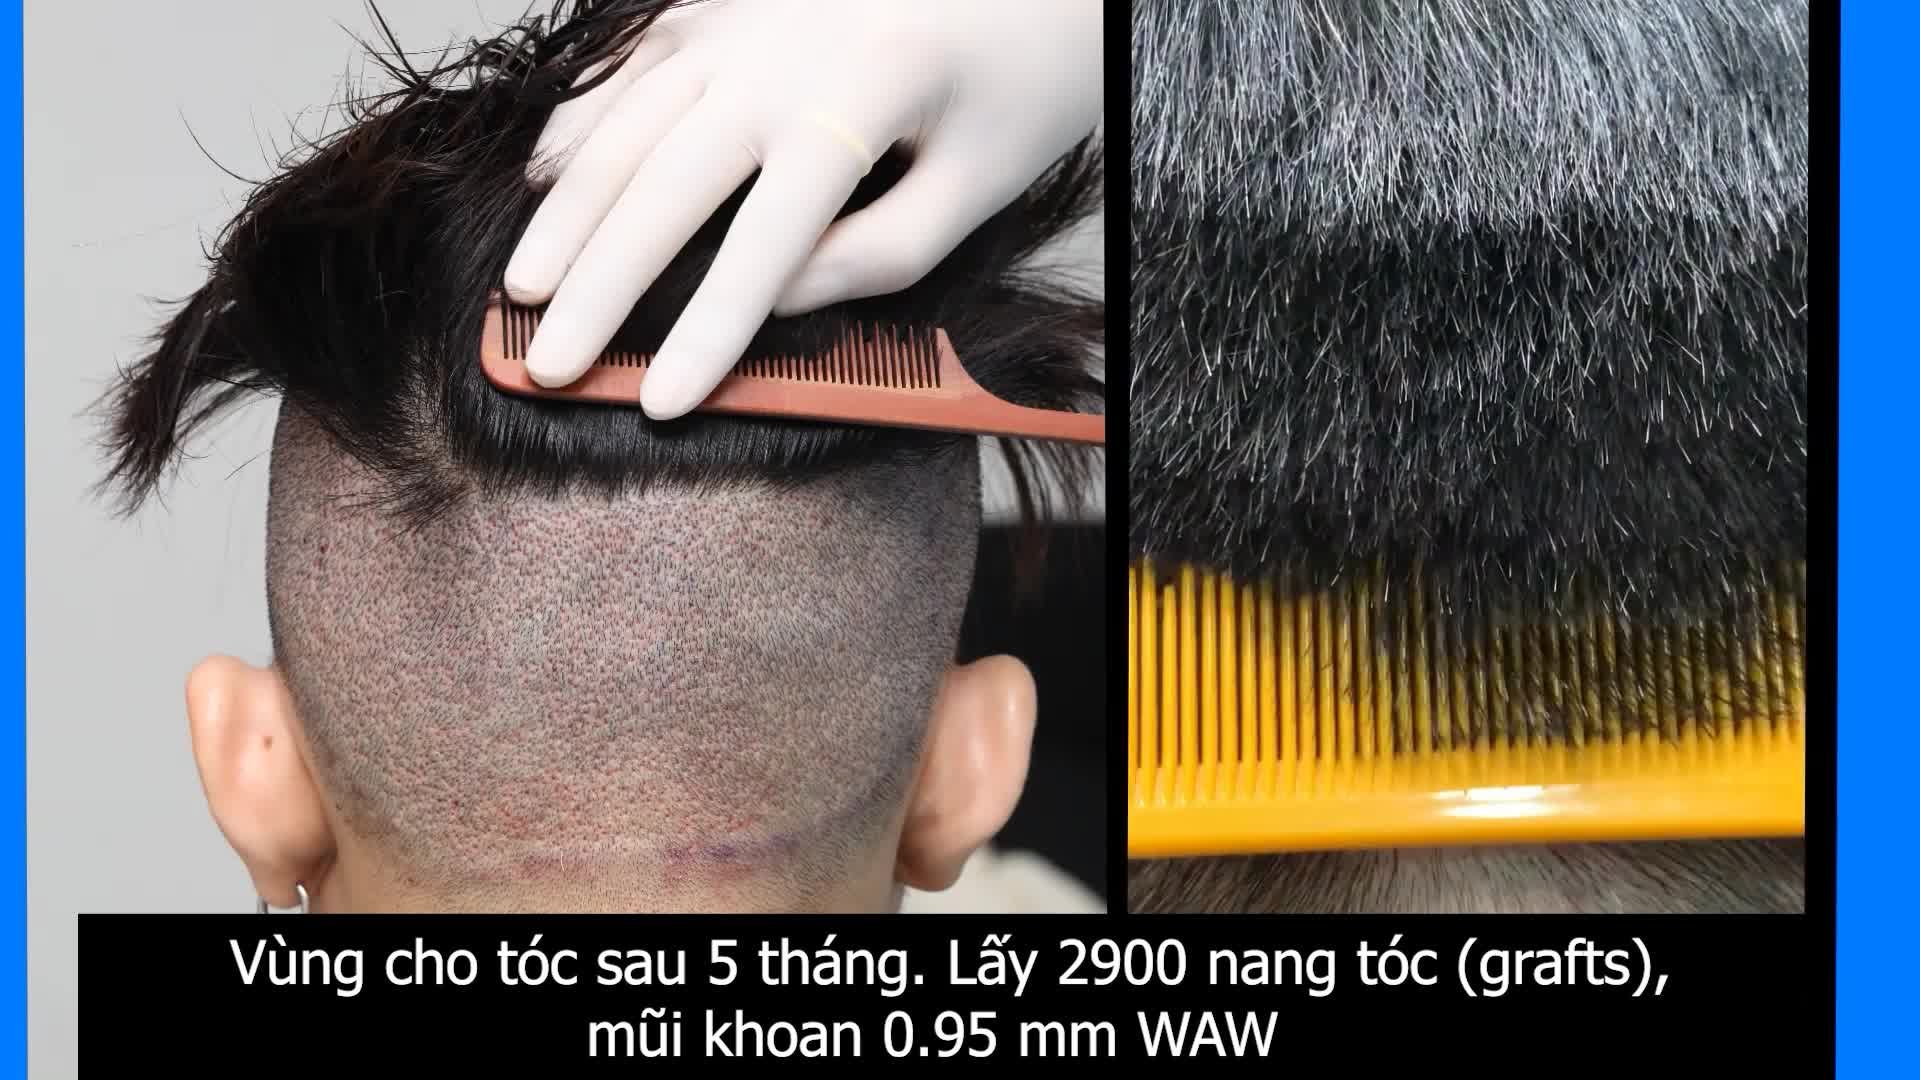 Vùng cho tóc sau khi lấy 2900 nang tóc sẽ như thế nào?